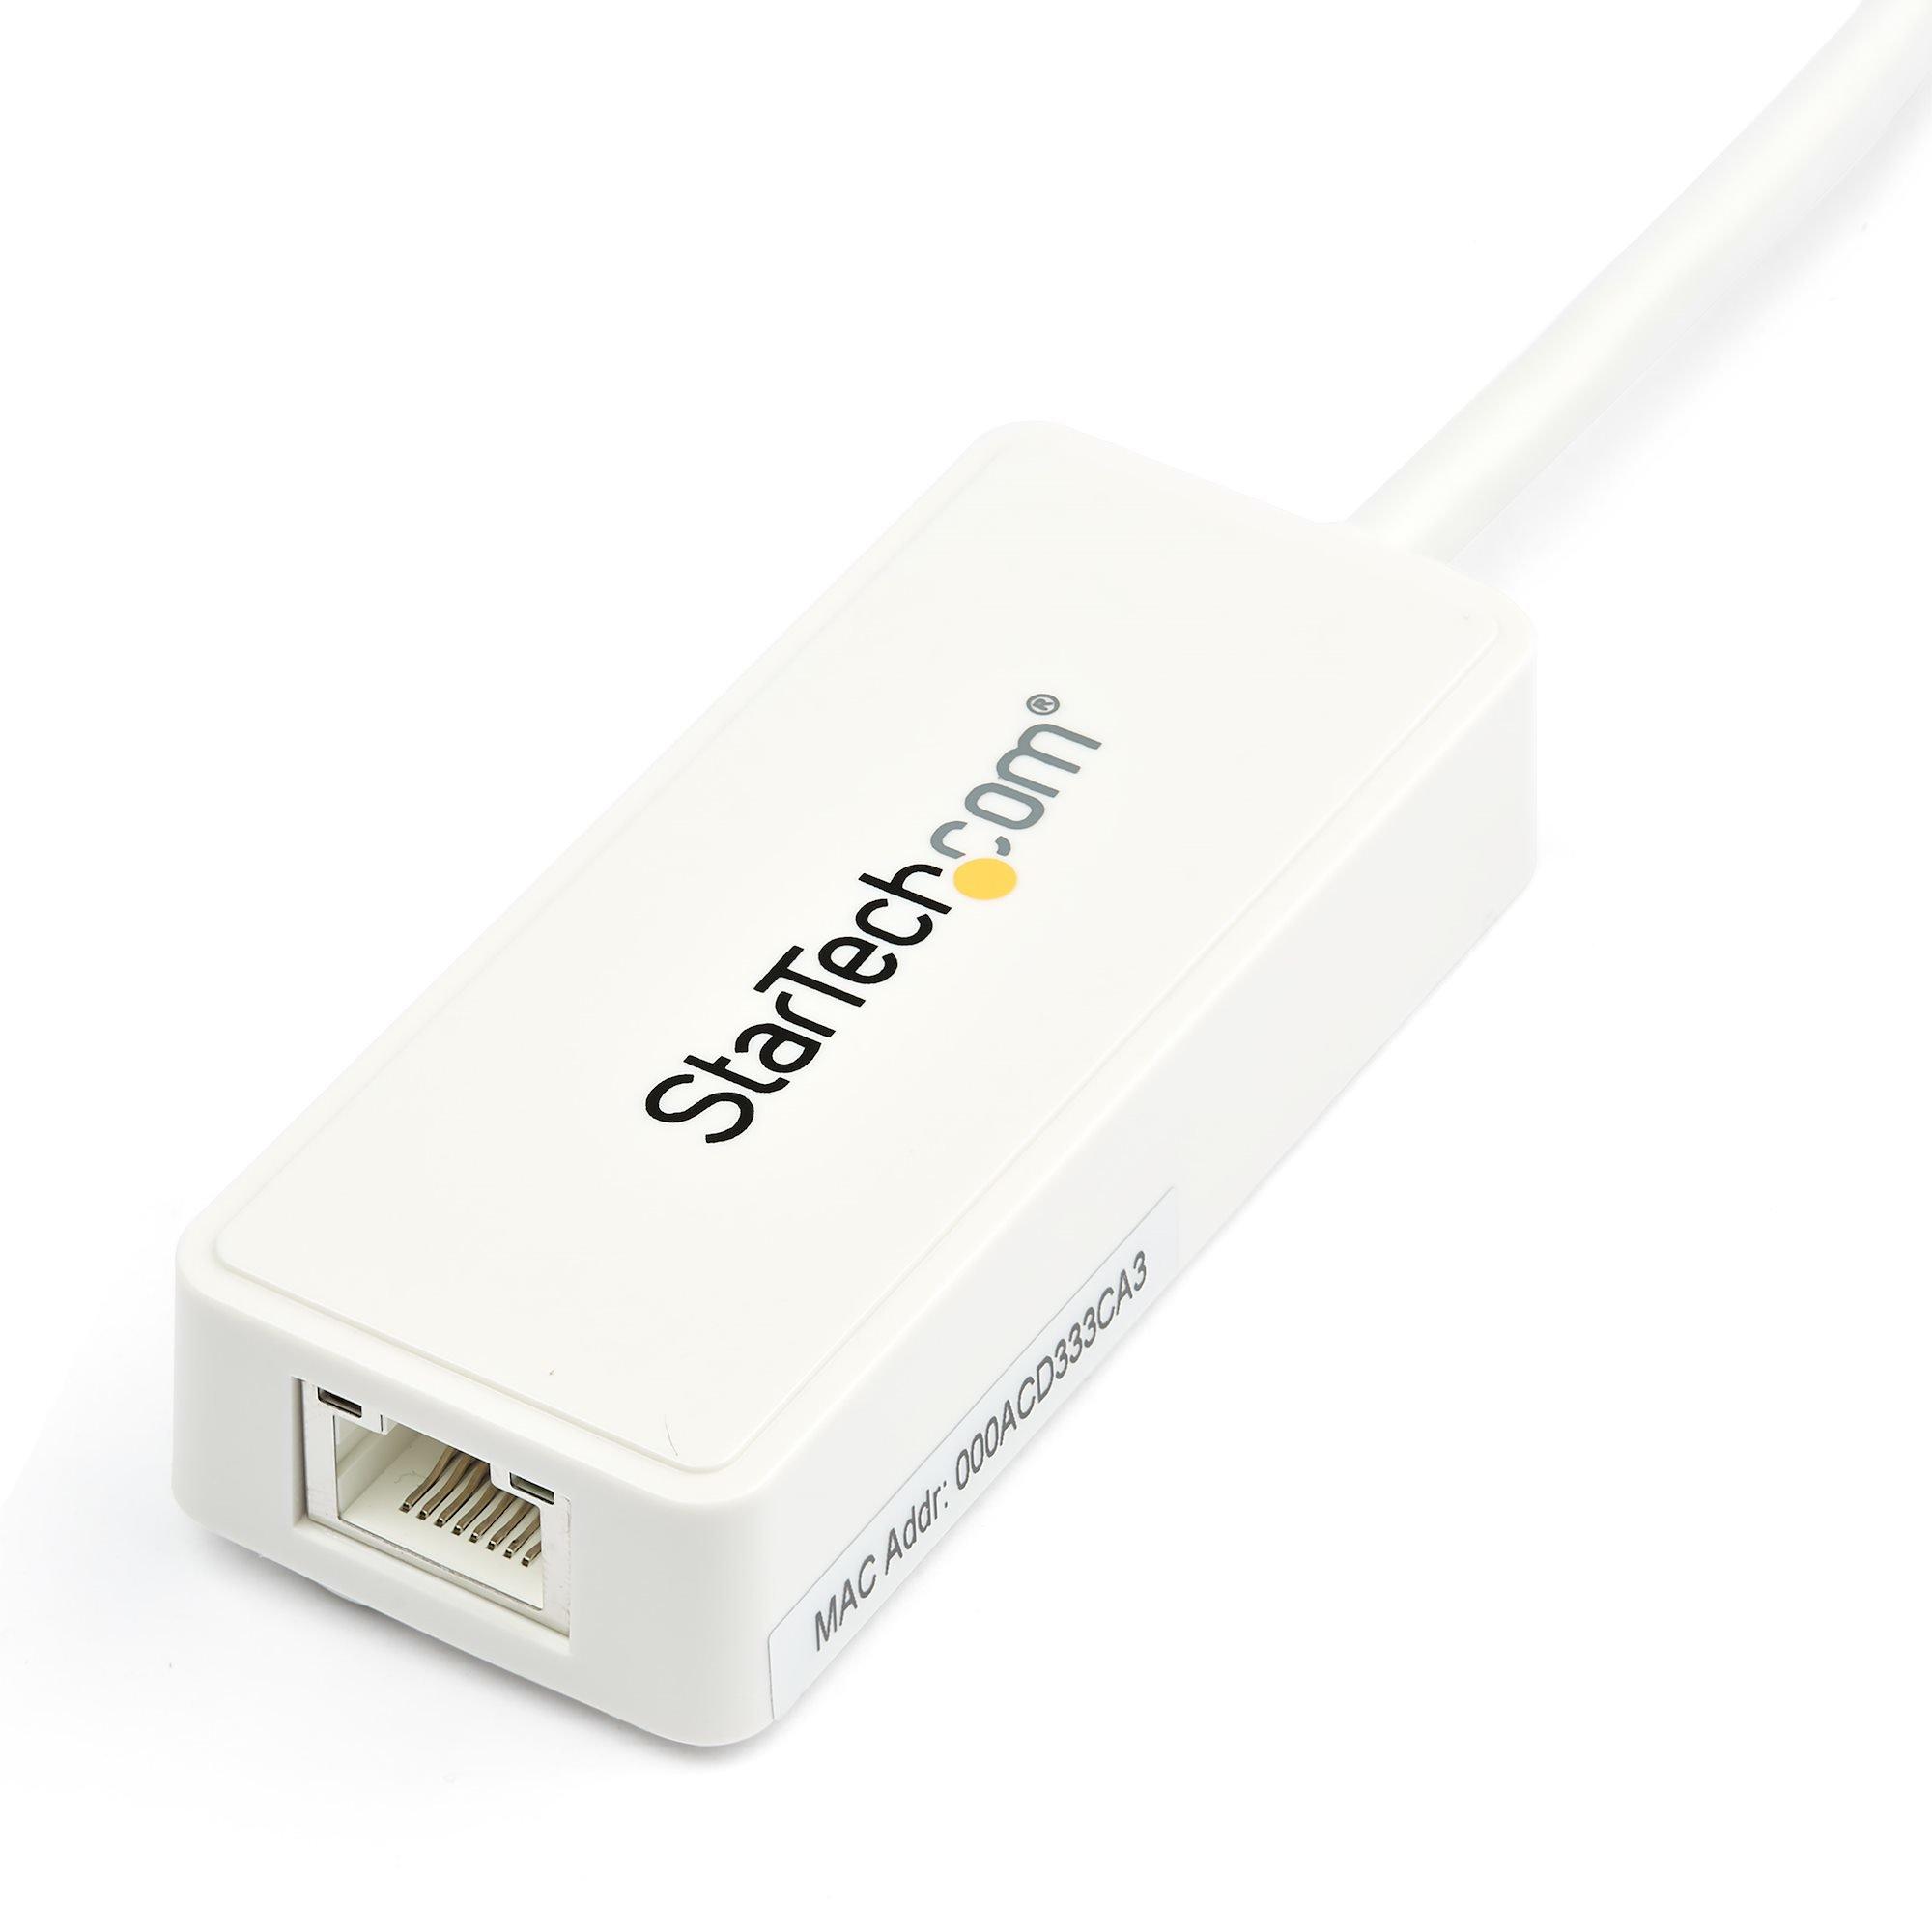 STARTECH.COM  Adaptateur USB 3.0 vers Ethernet Gigabit - Carte Réseau Externe USB vers 1 Port RJ45 - Blanc 